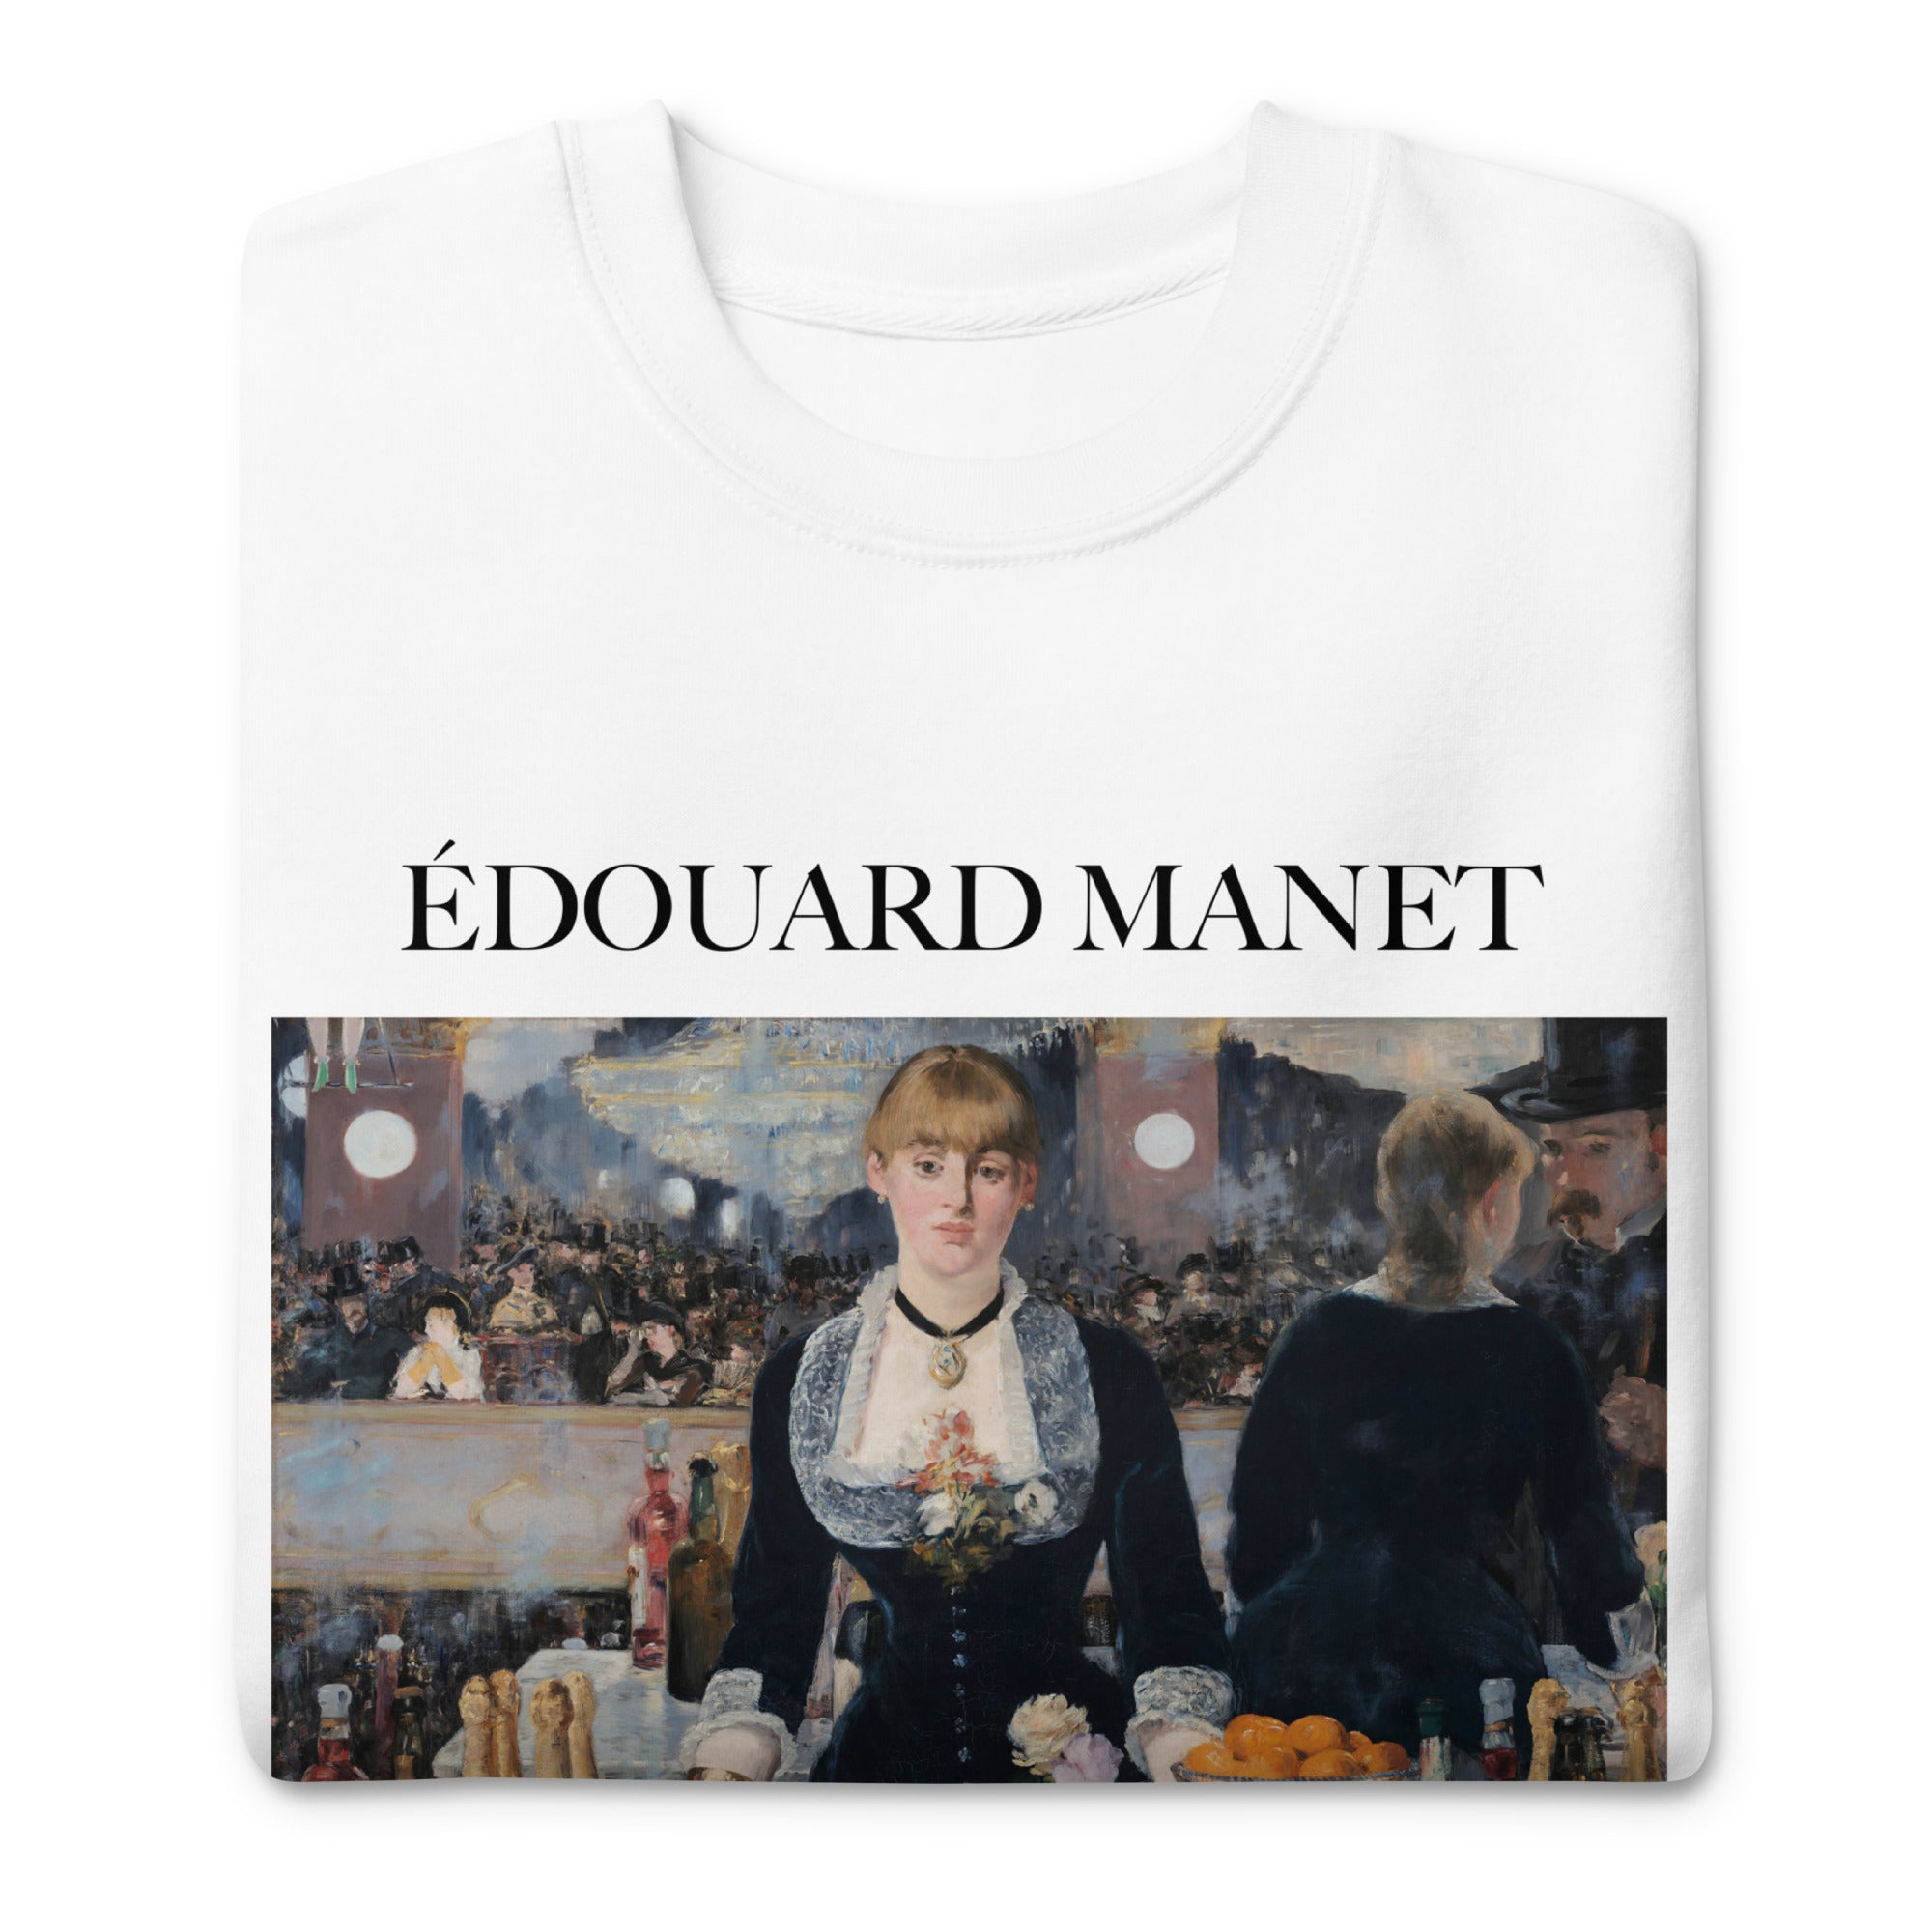 Édouard Manet 'A Bar at the Folies-Bergère' Famous Painting Sweatshirt | Unisex Premium Sweatshirt